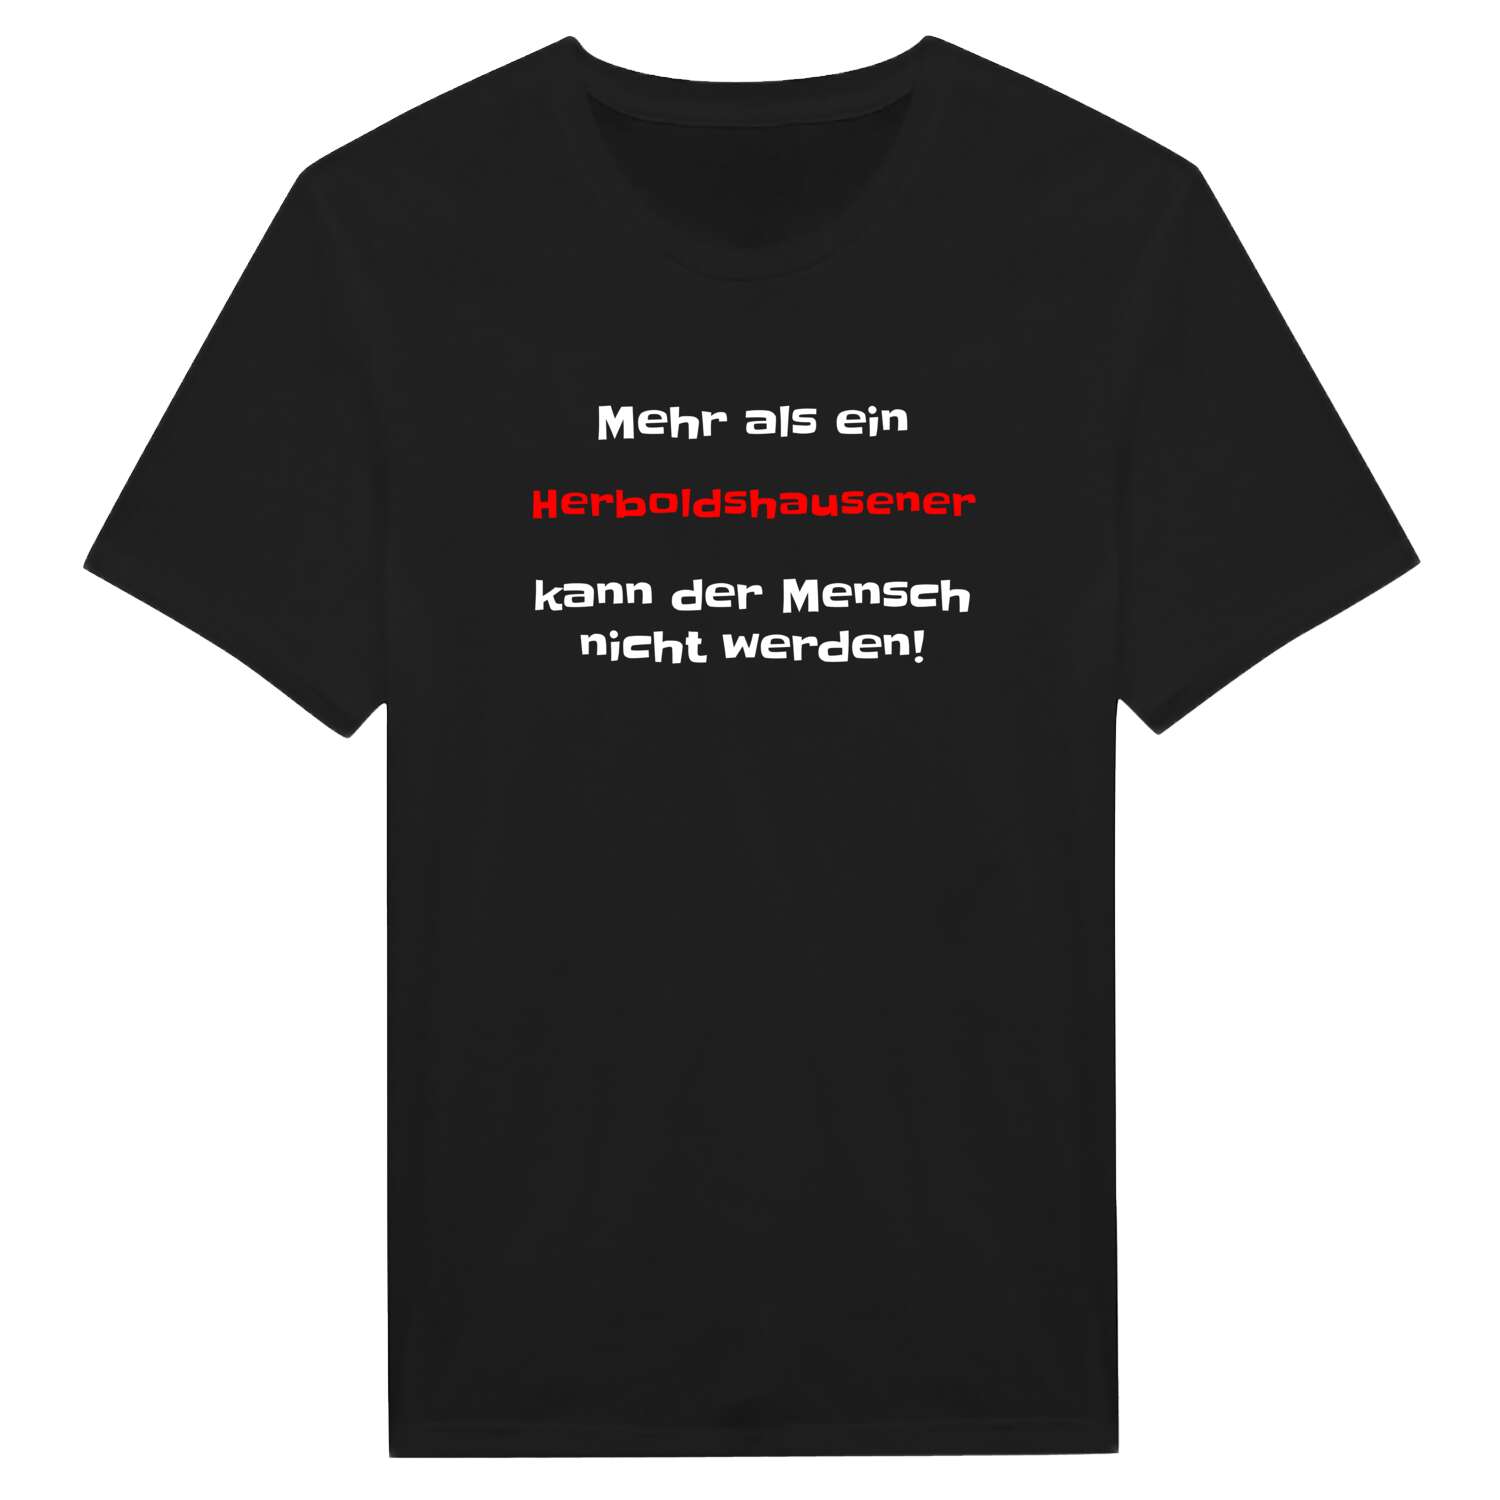 Herboldshausen T-Shirt »Mehr als ein«